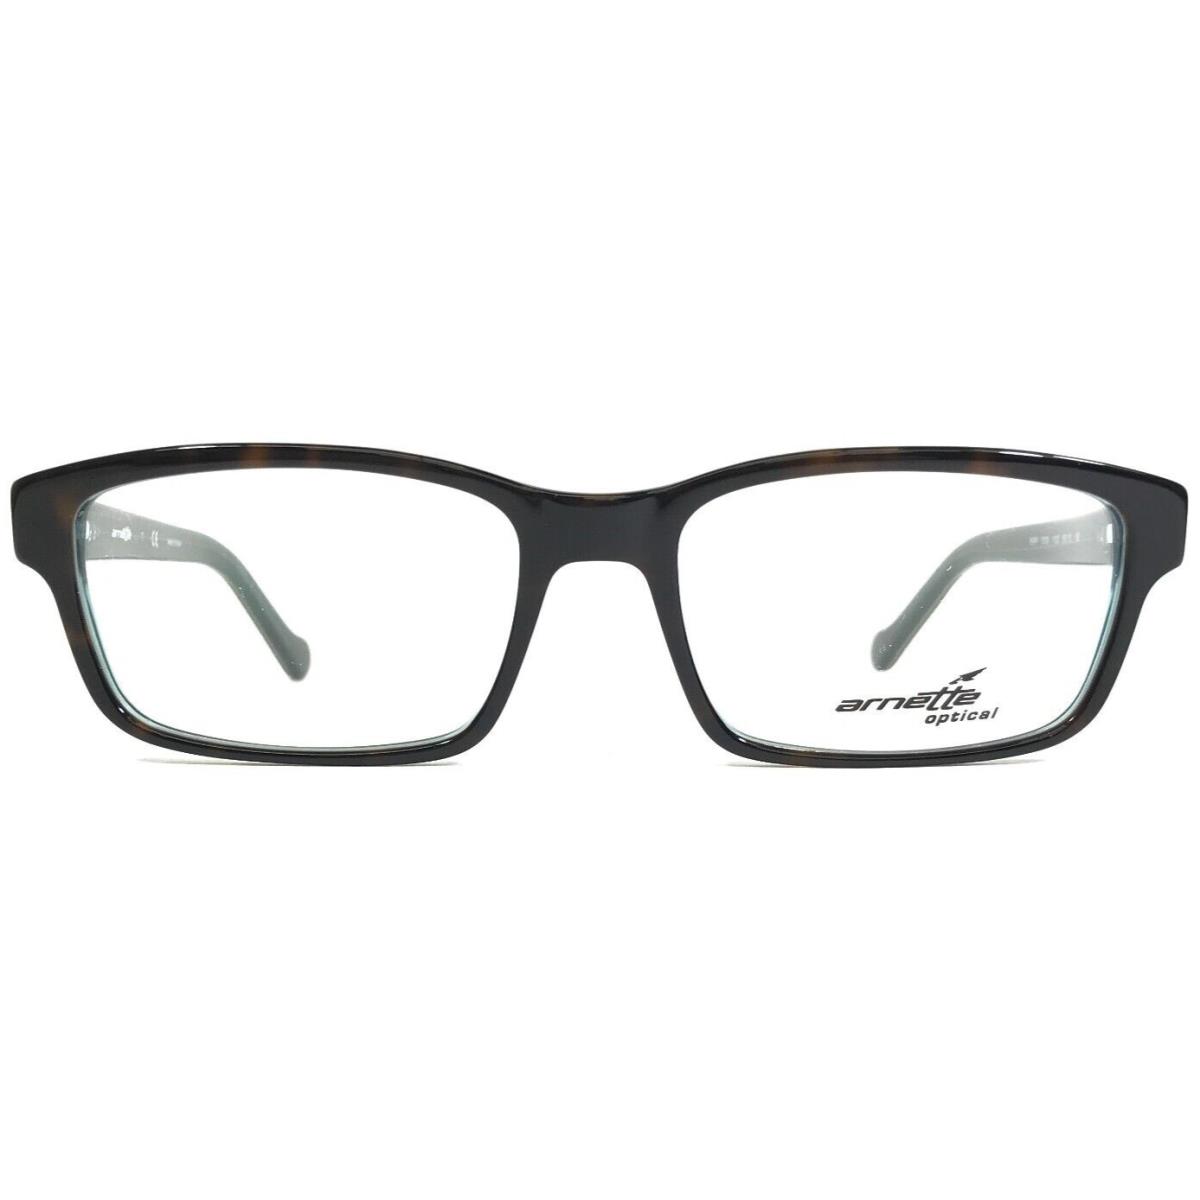 Arnette Eyeglasses Frames Riff 7079 1103 Green Brown Tortoise 55-18-145